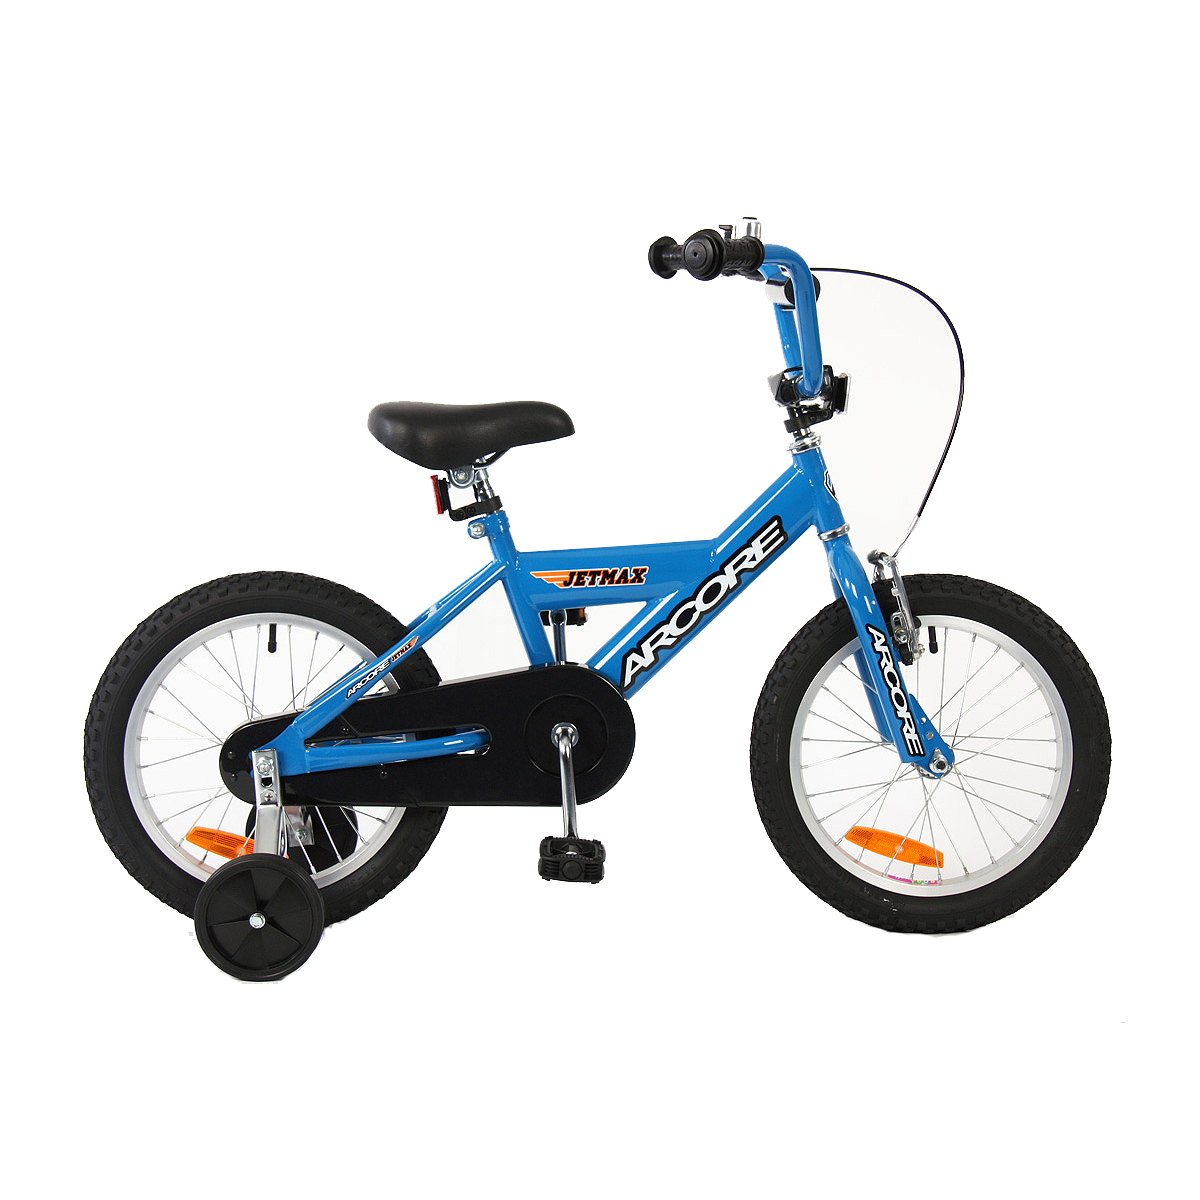 JETMAX 16 - Kids' BMX bike